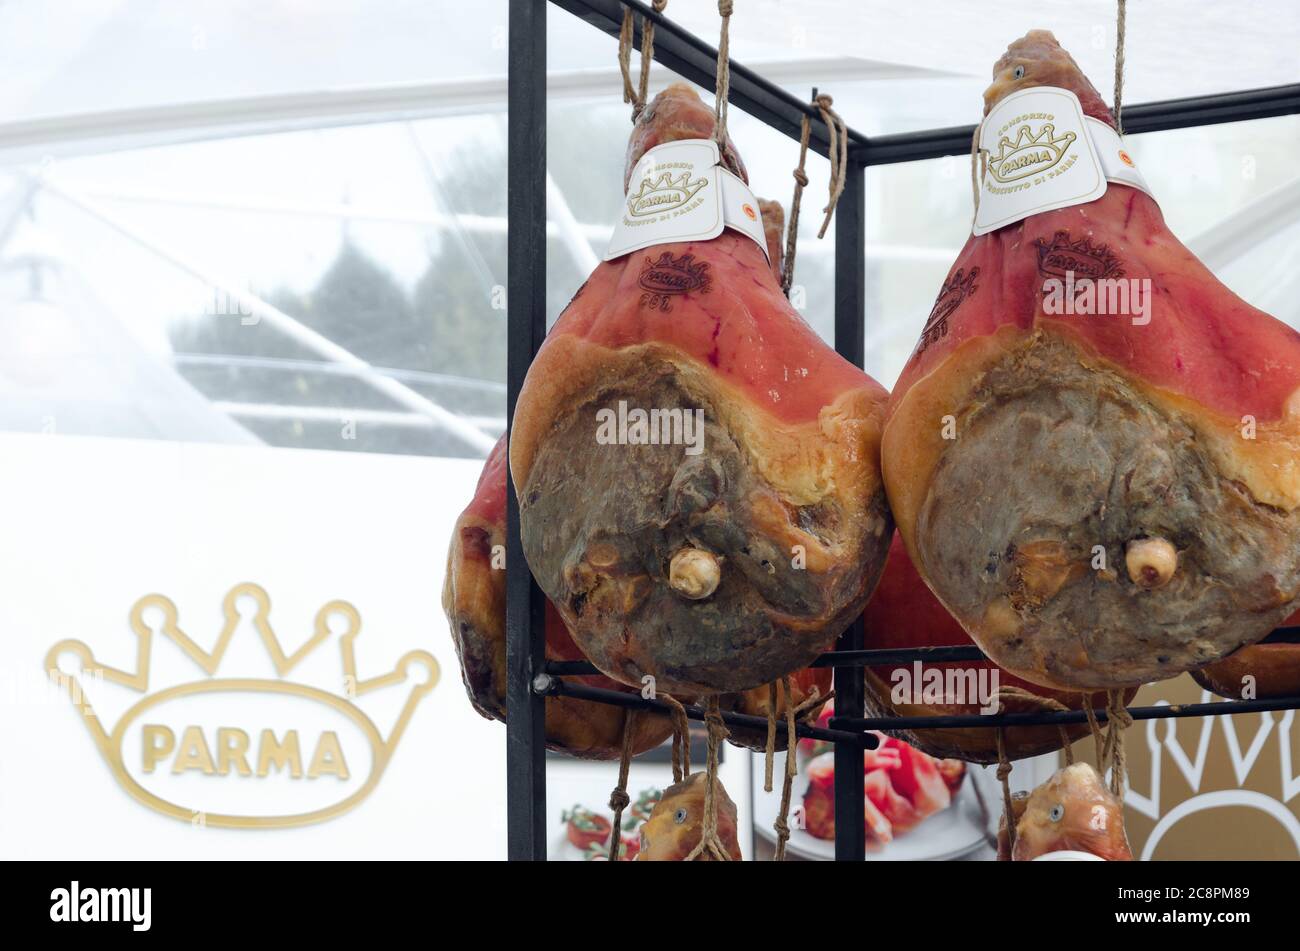 TORINO, ITALIA - 17 GIUGNO 2018: Il 17 2018 giugno il prosciutto crudo di Parma sospeso in uno stand di mercato il Torino, Piemonte, Italia. Foto Stock